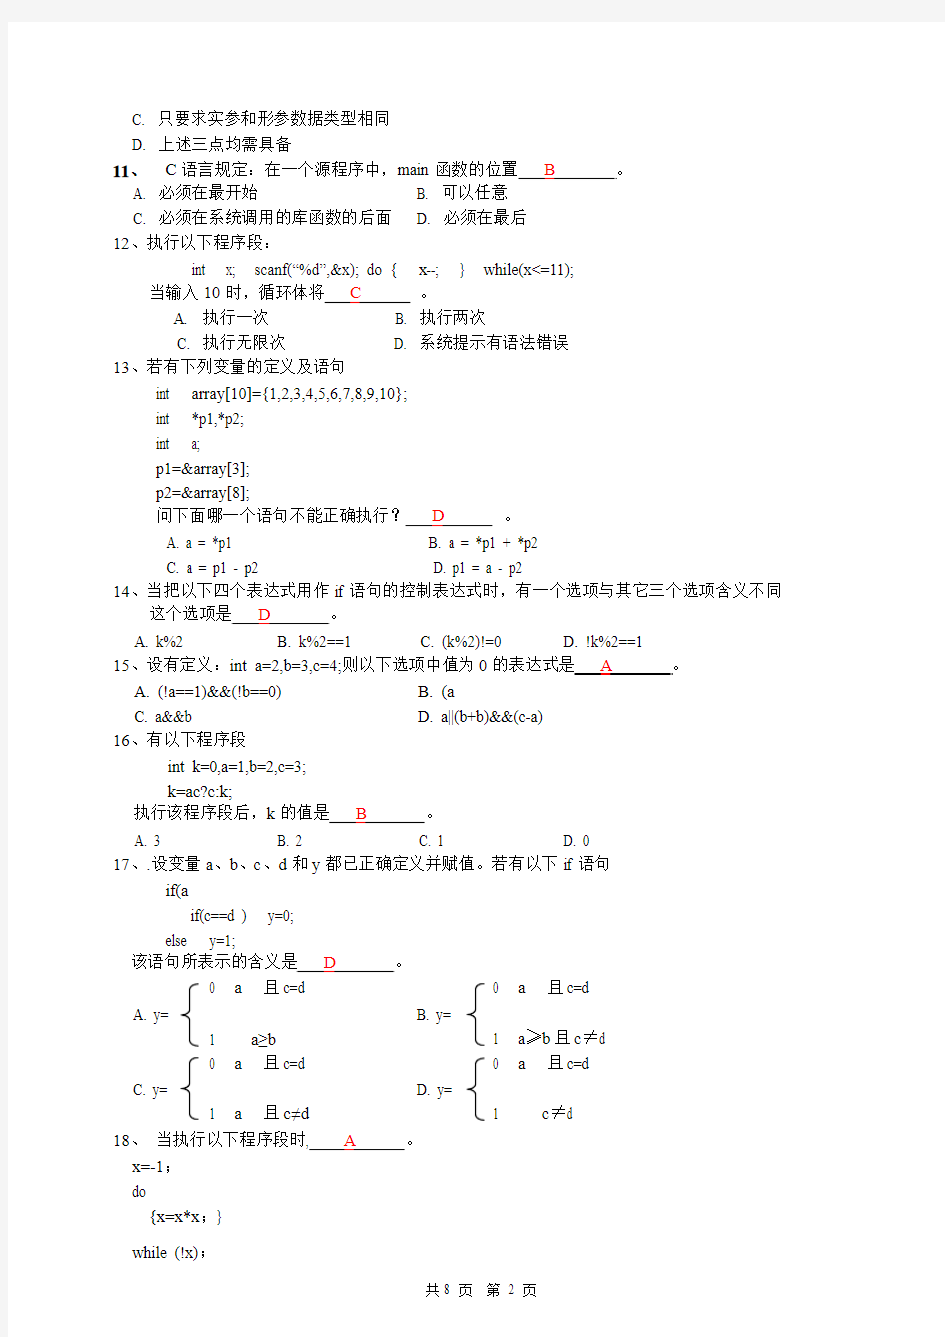 广西科技大学12-13-1学期(上半)C语言B卷 答案标出